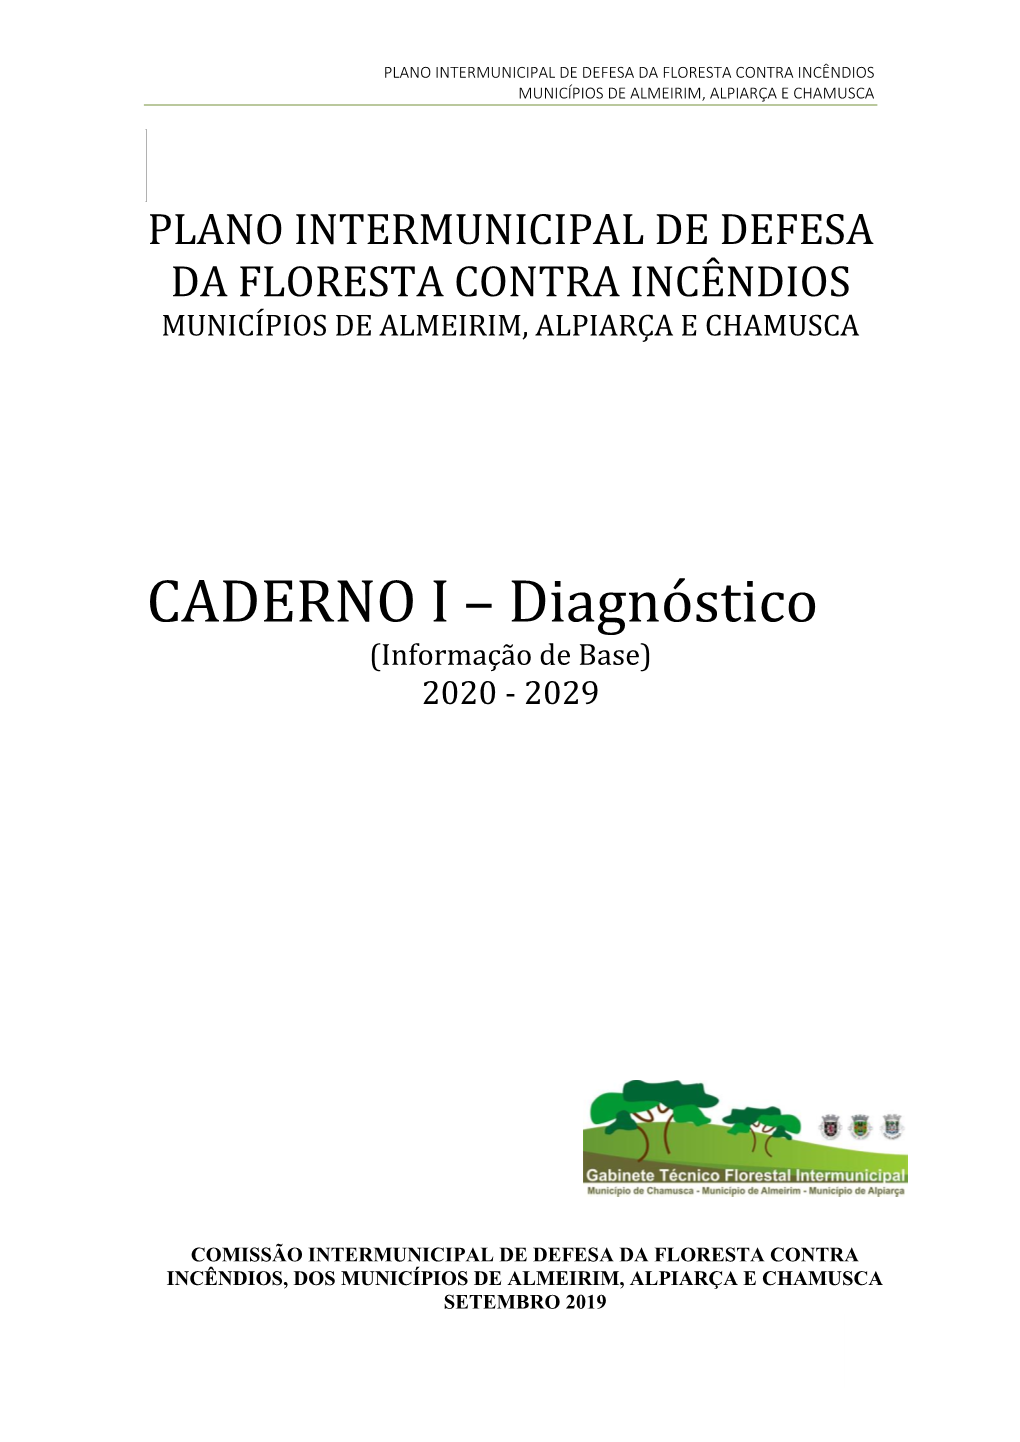 CADERNO I – Diagnóstico (Informação De Base) 2020 - 2029